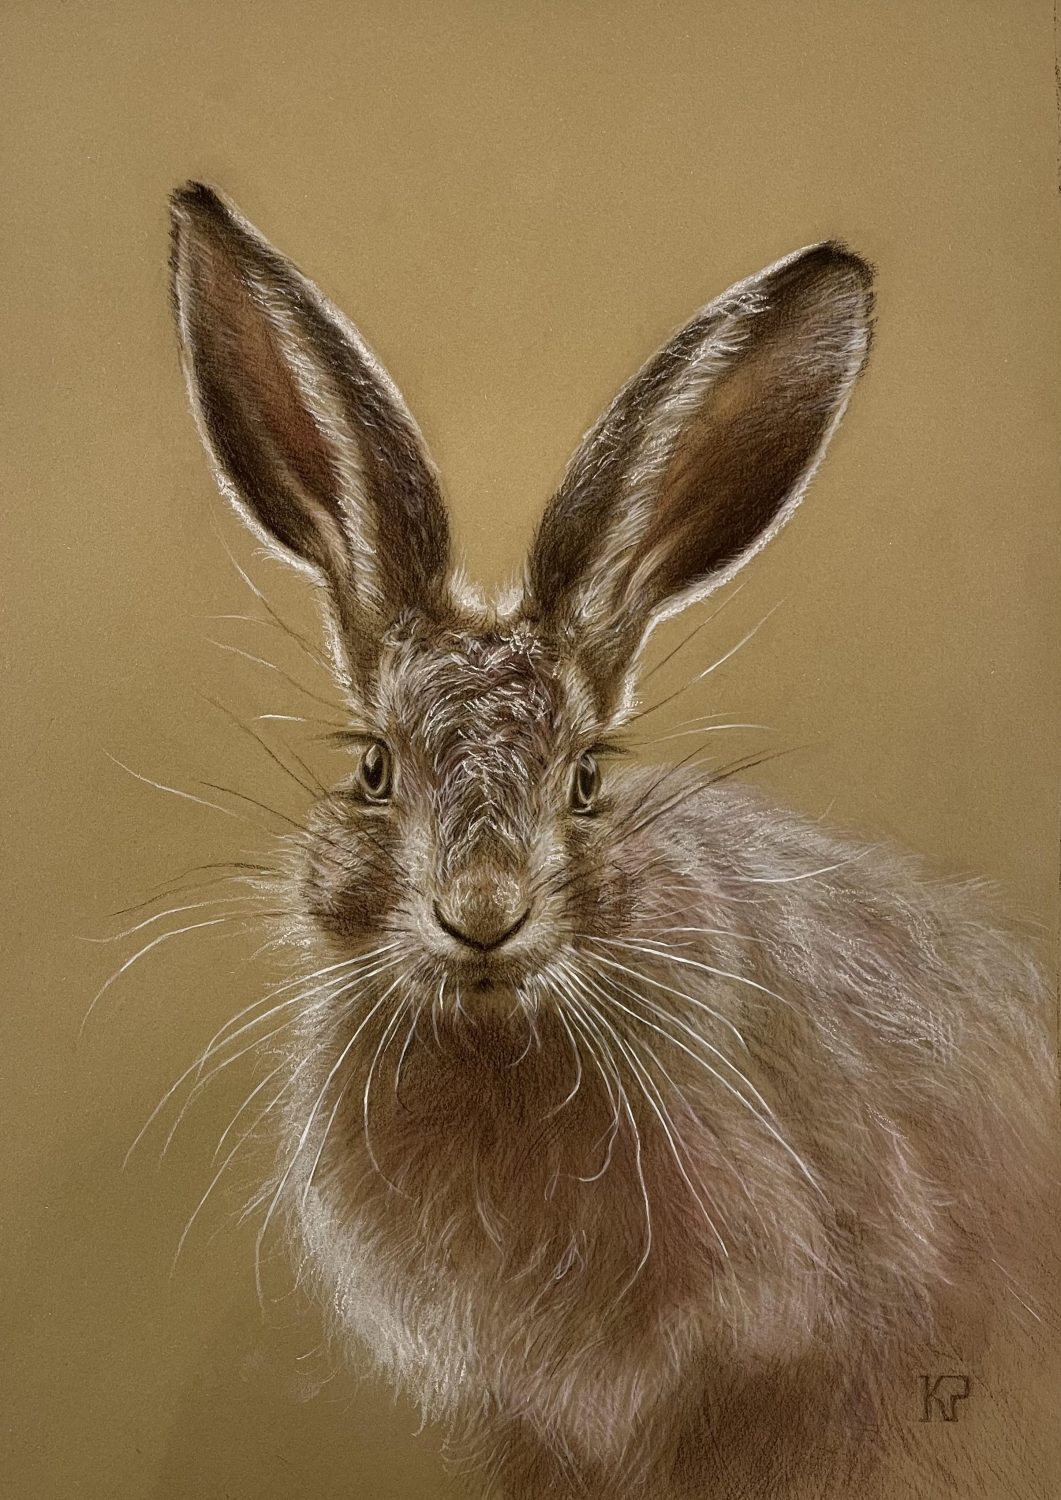 Fixated Hare by Kateryna Penchkovska